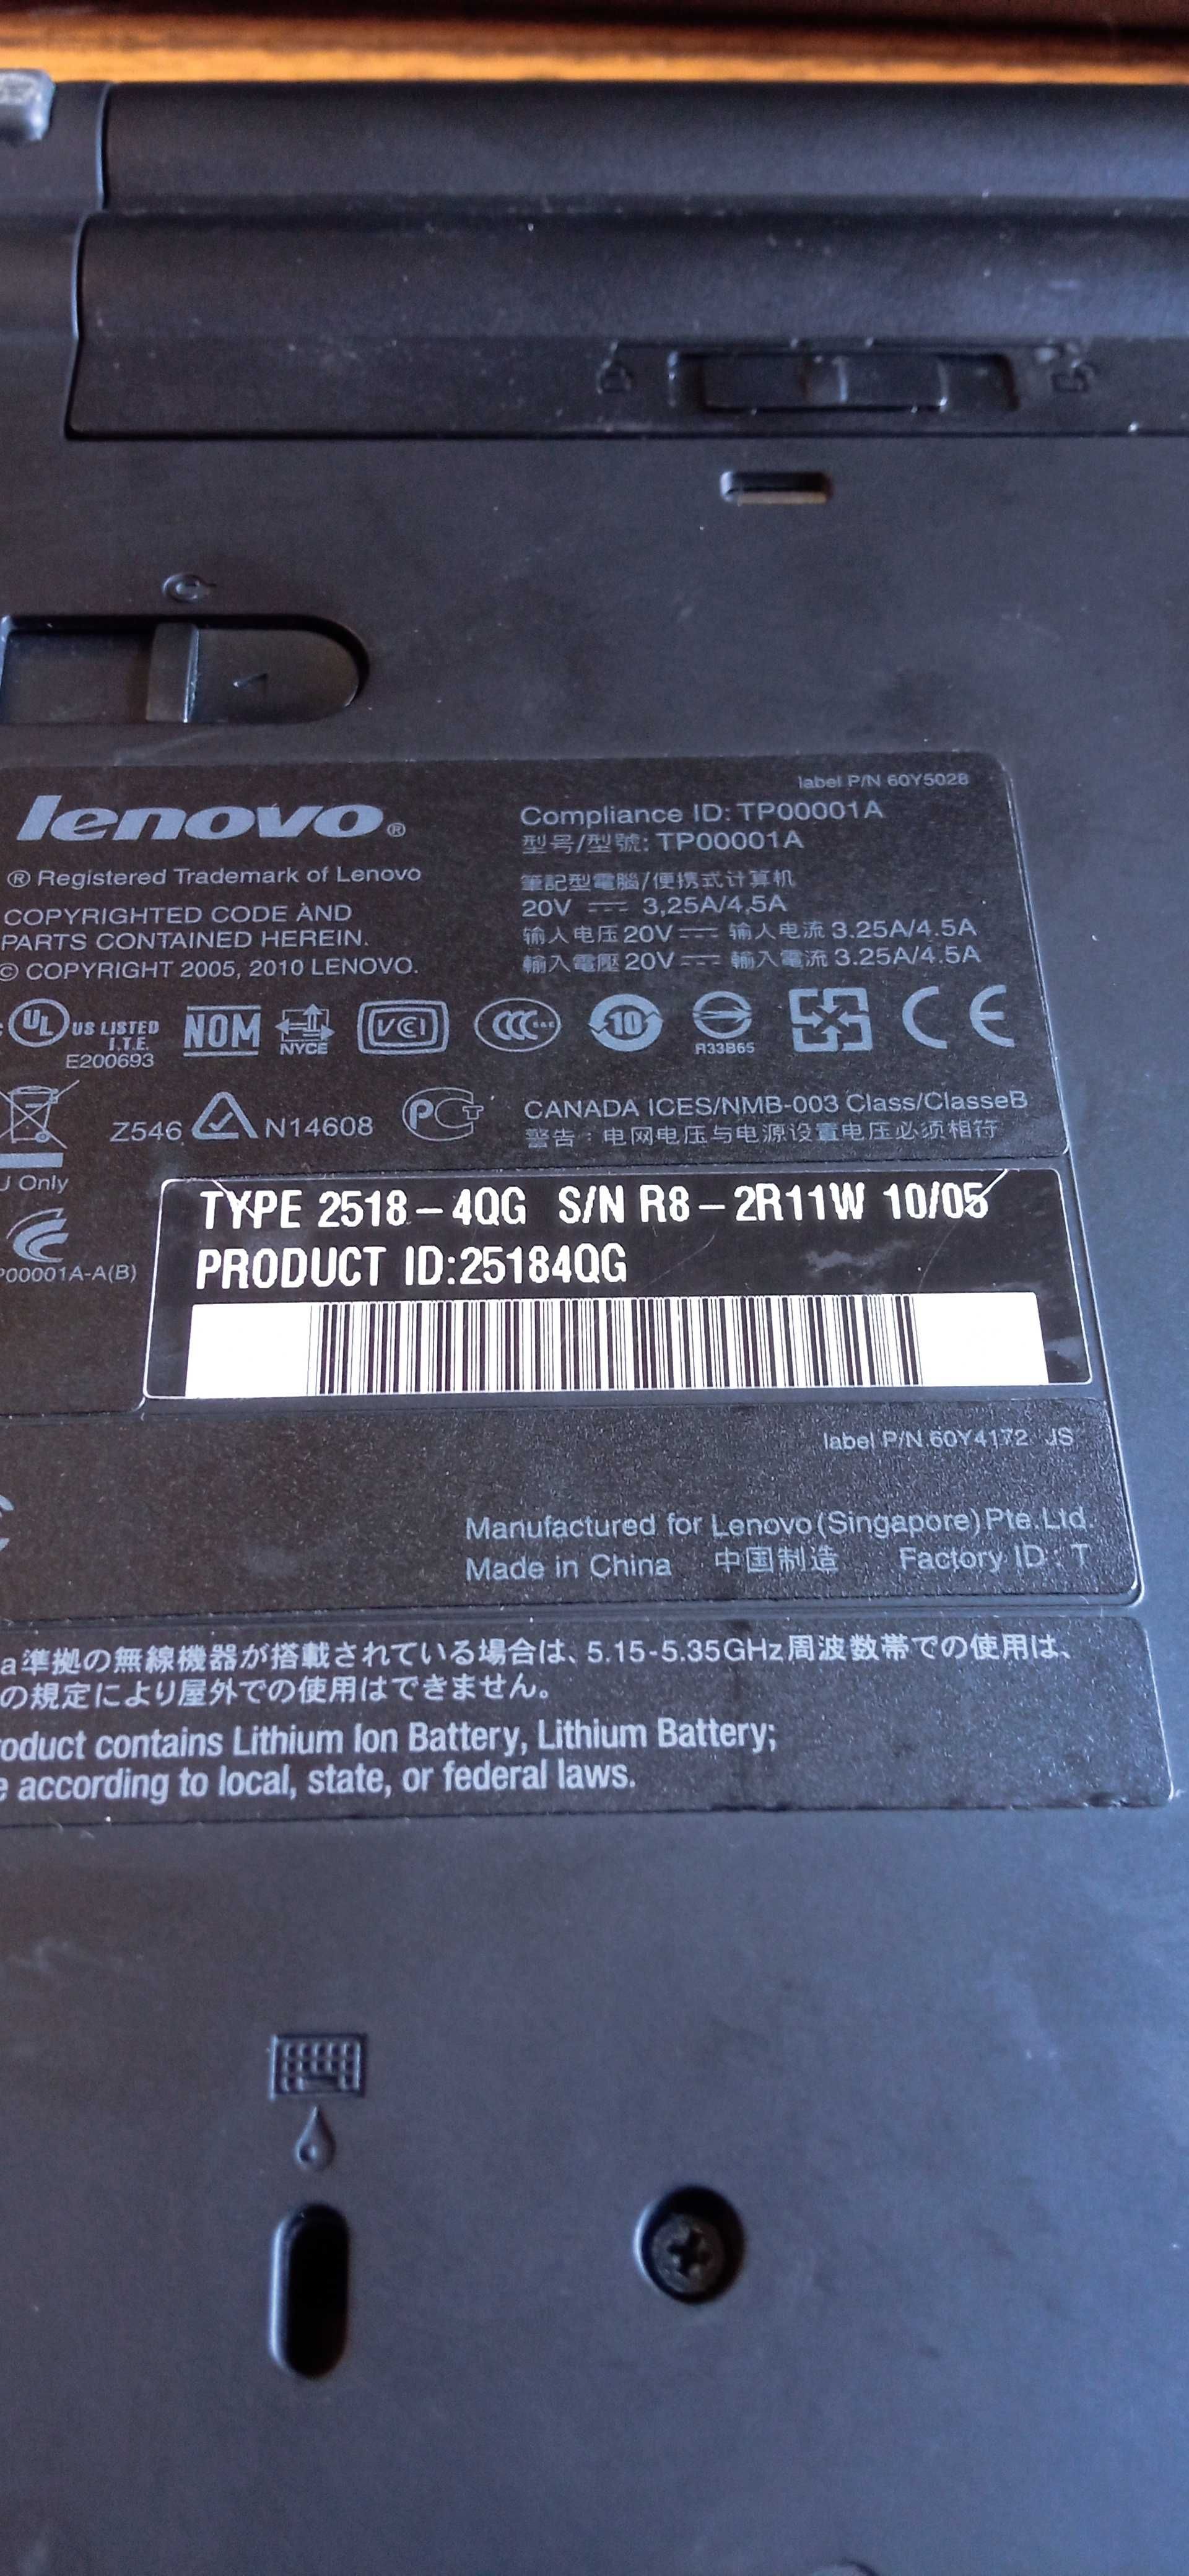 Ноутбук Lenovo ThinkPad T410i Intel I5 SSD120 акум 1-2 год